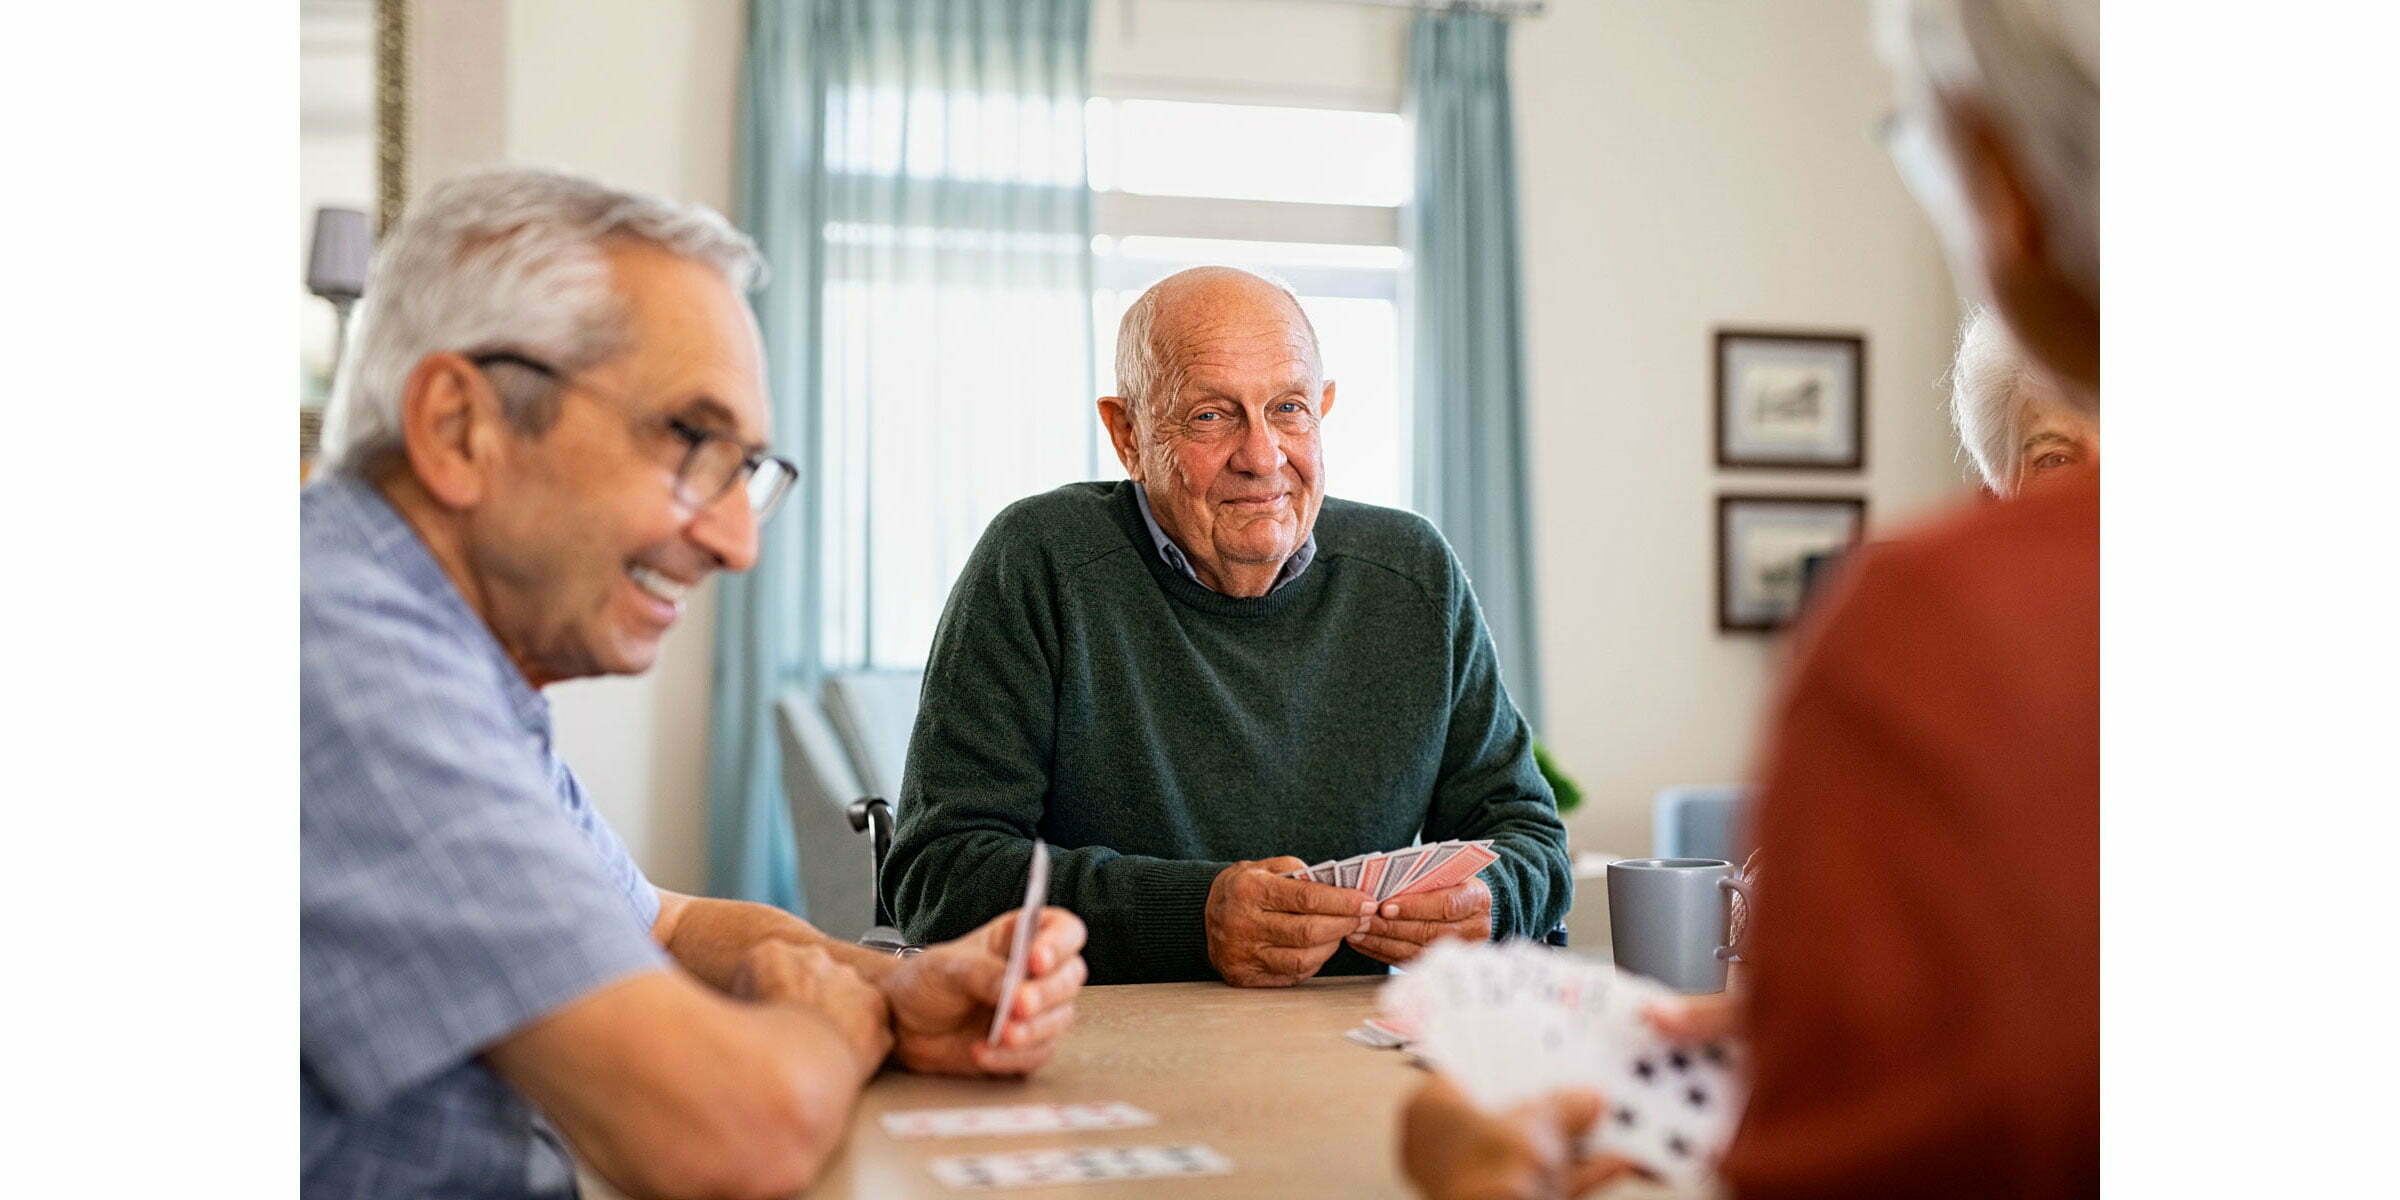 Senior men enjoy a card game together.